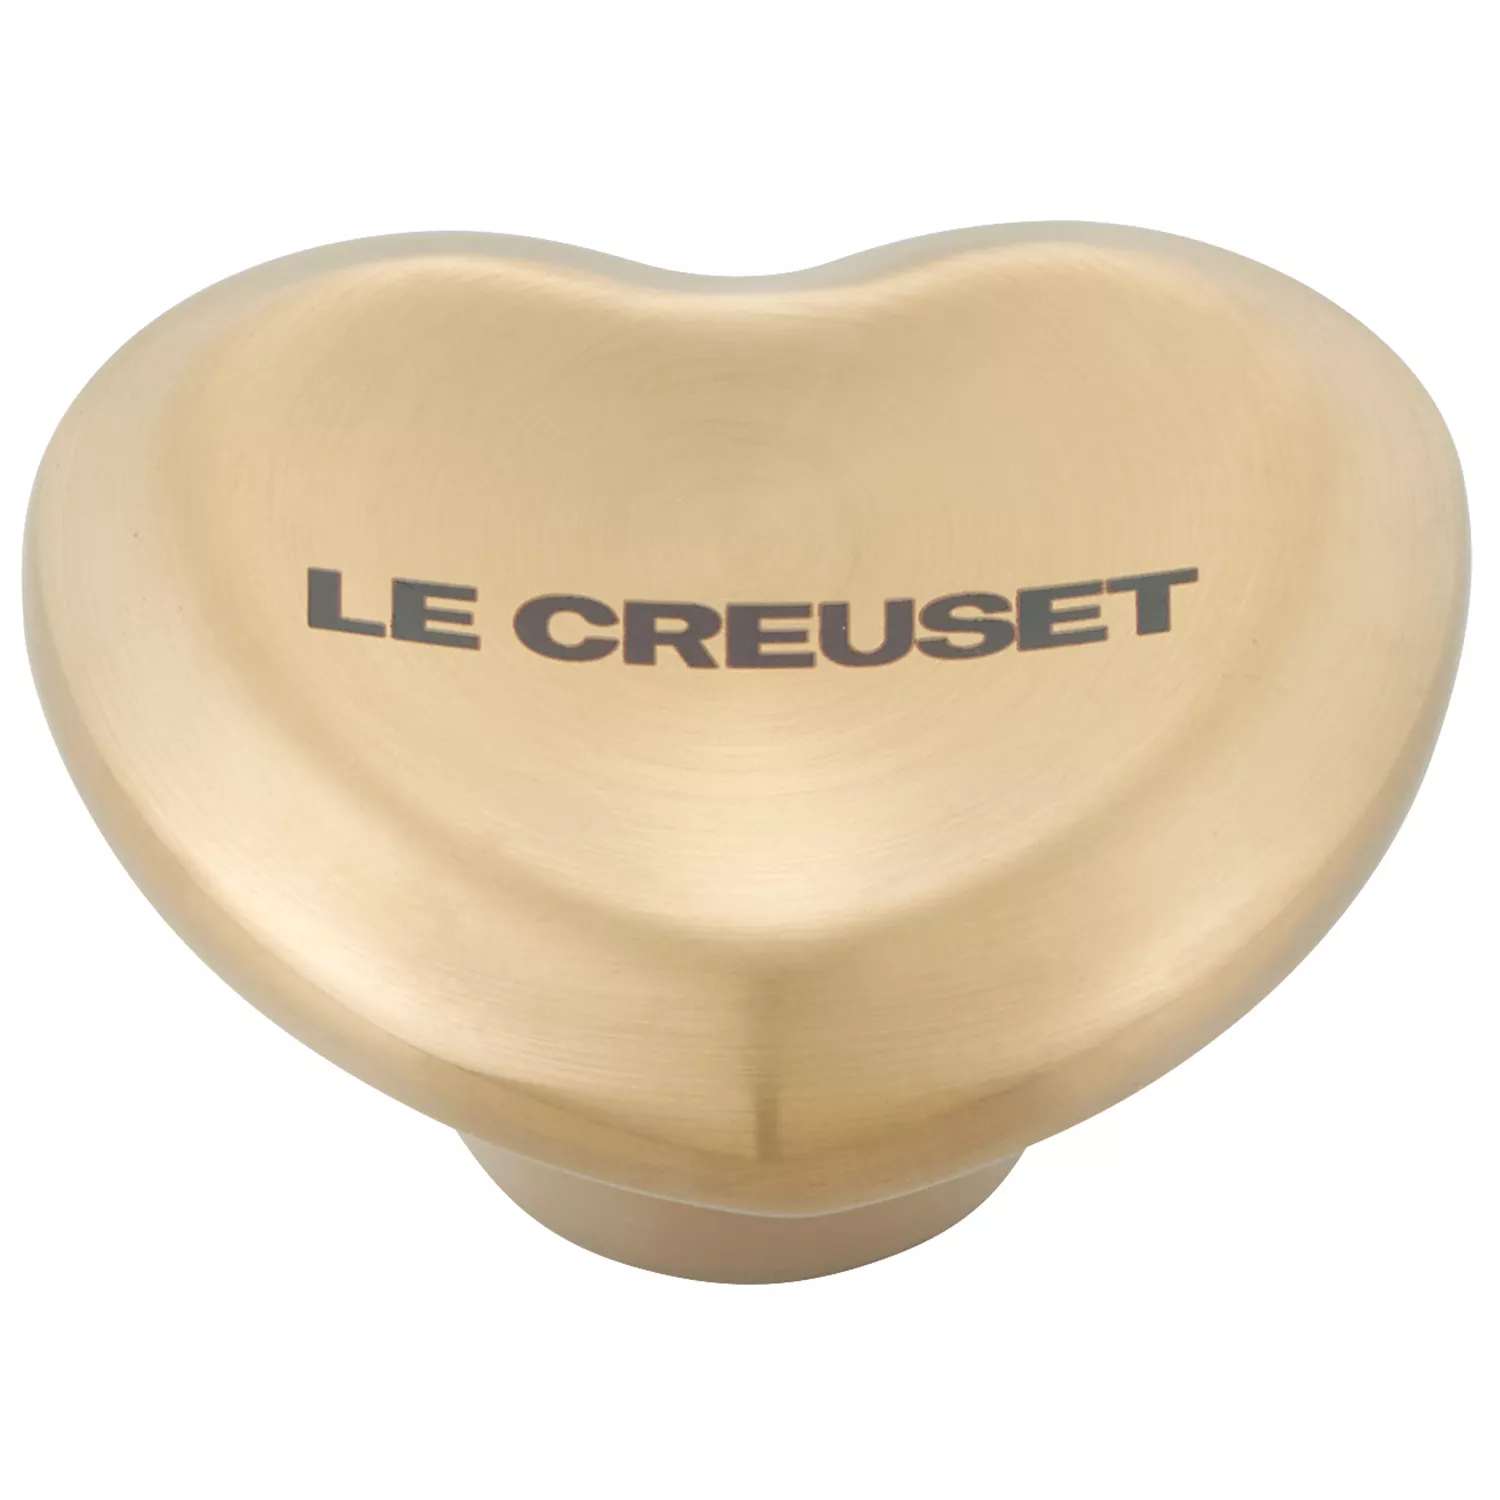 Le Creuset 8oz Mini Round Cocotte with Gold Heart Knob | Sea Salt